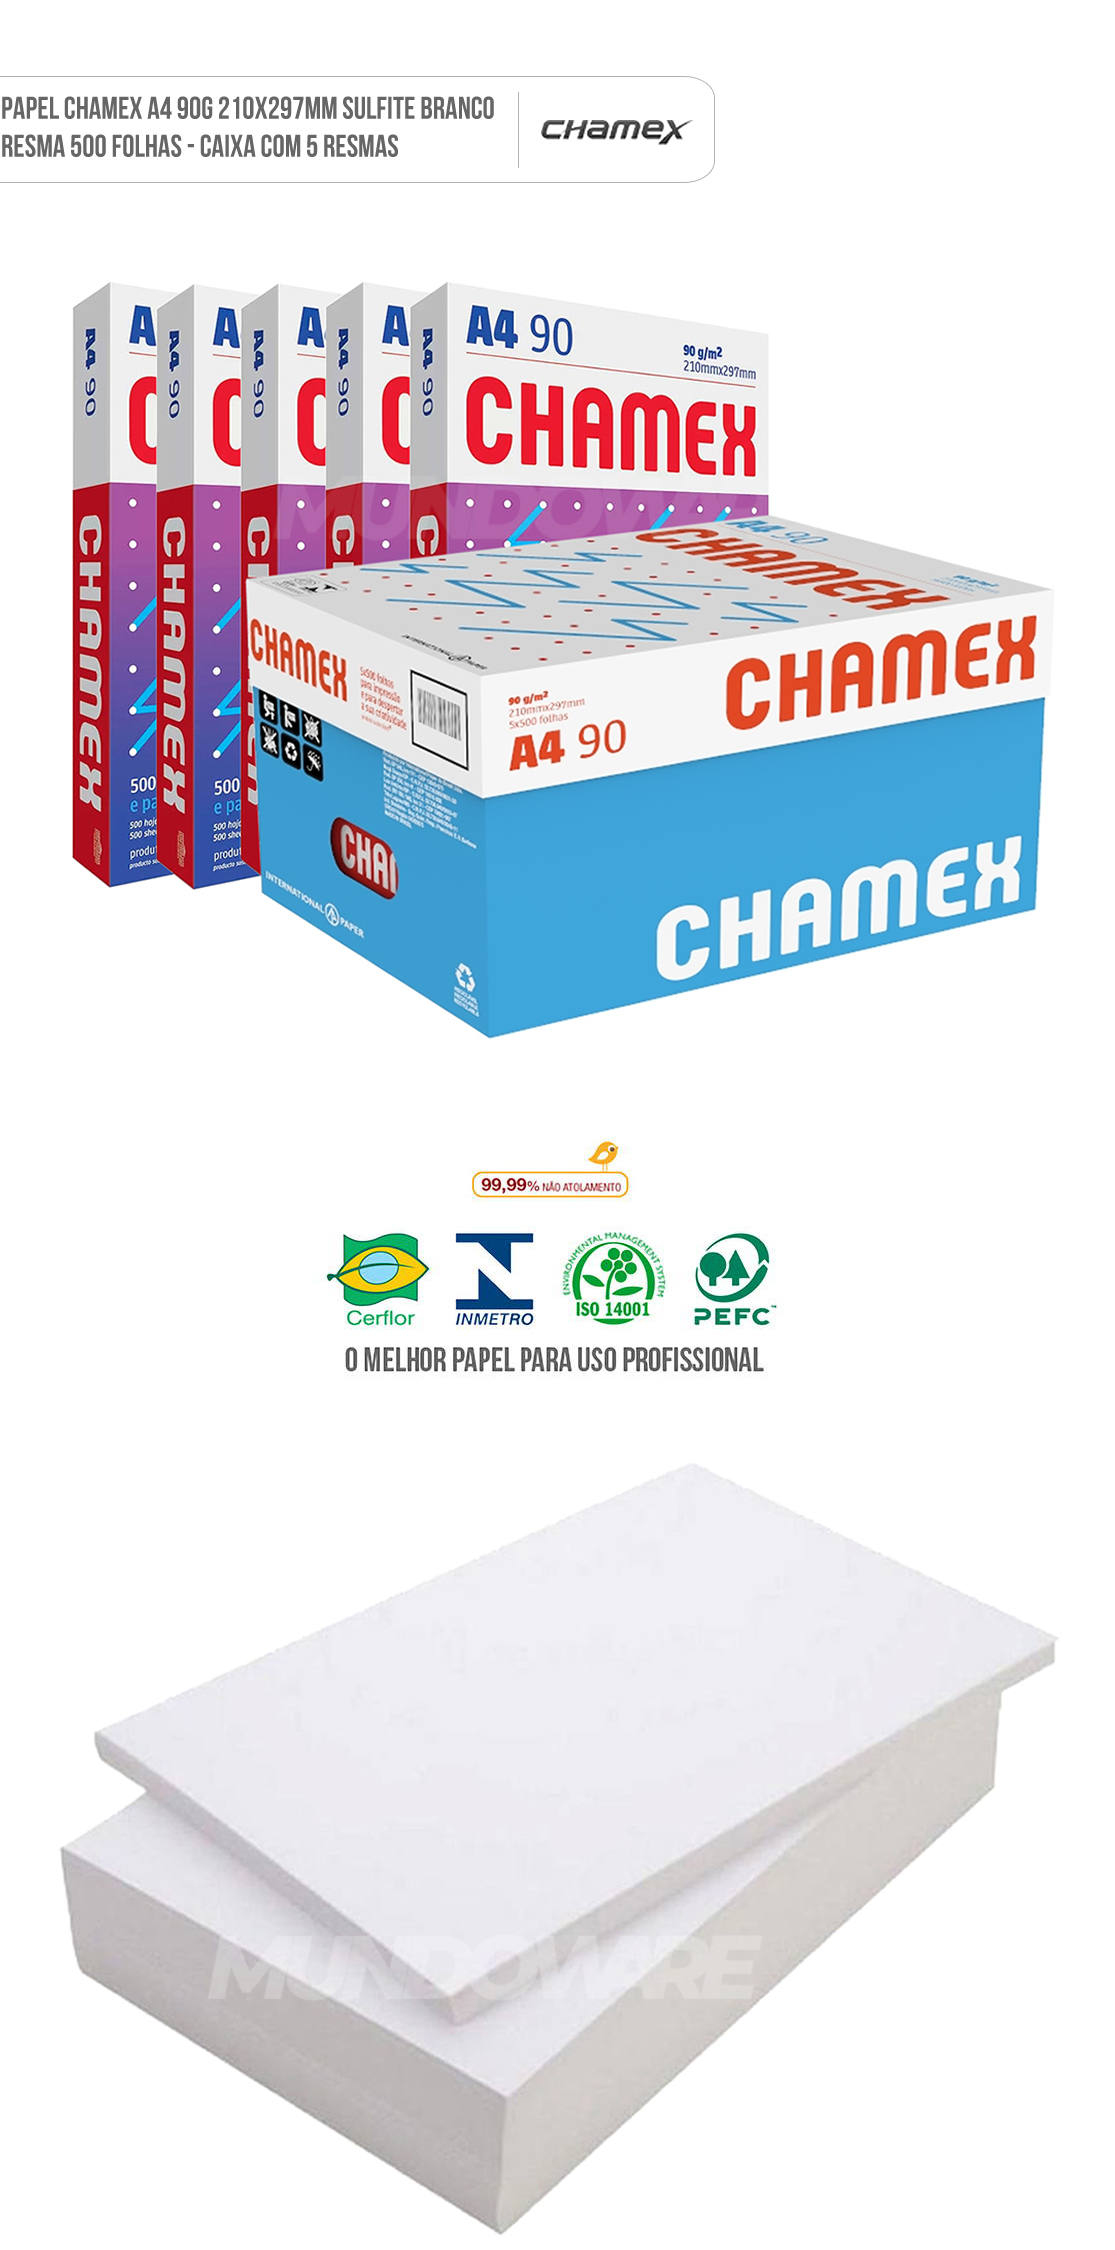 Papel Chamex Super A4 90g 210x297mm Branco Sulfite Caixa com 5 Resmas com 500 folhas cada